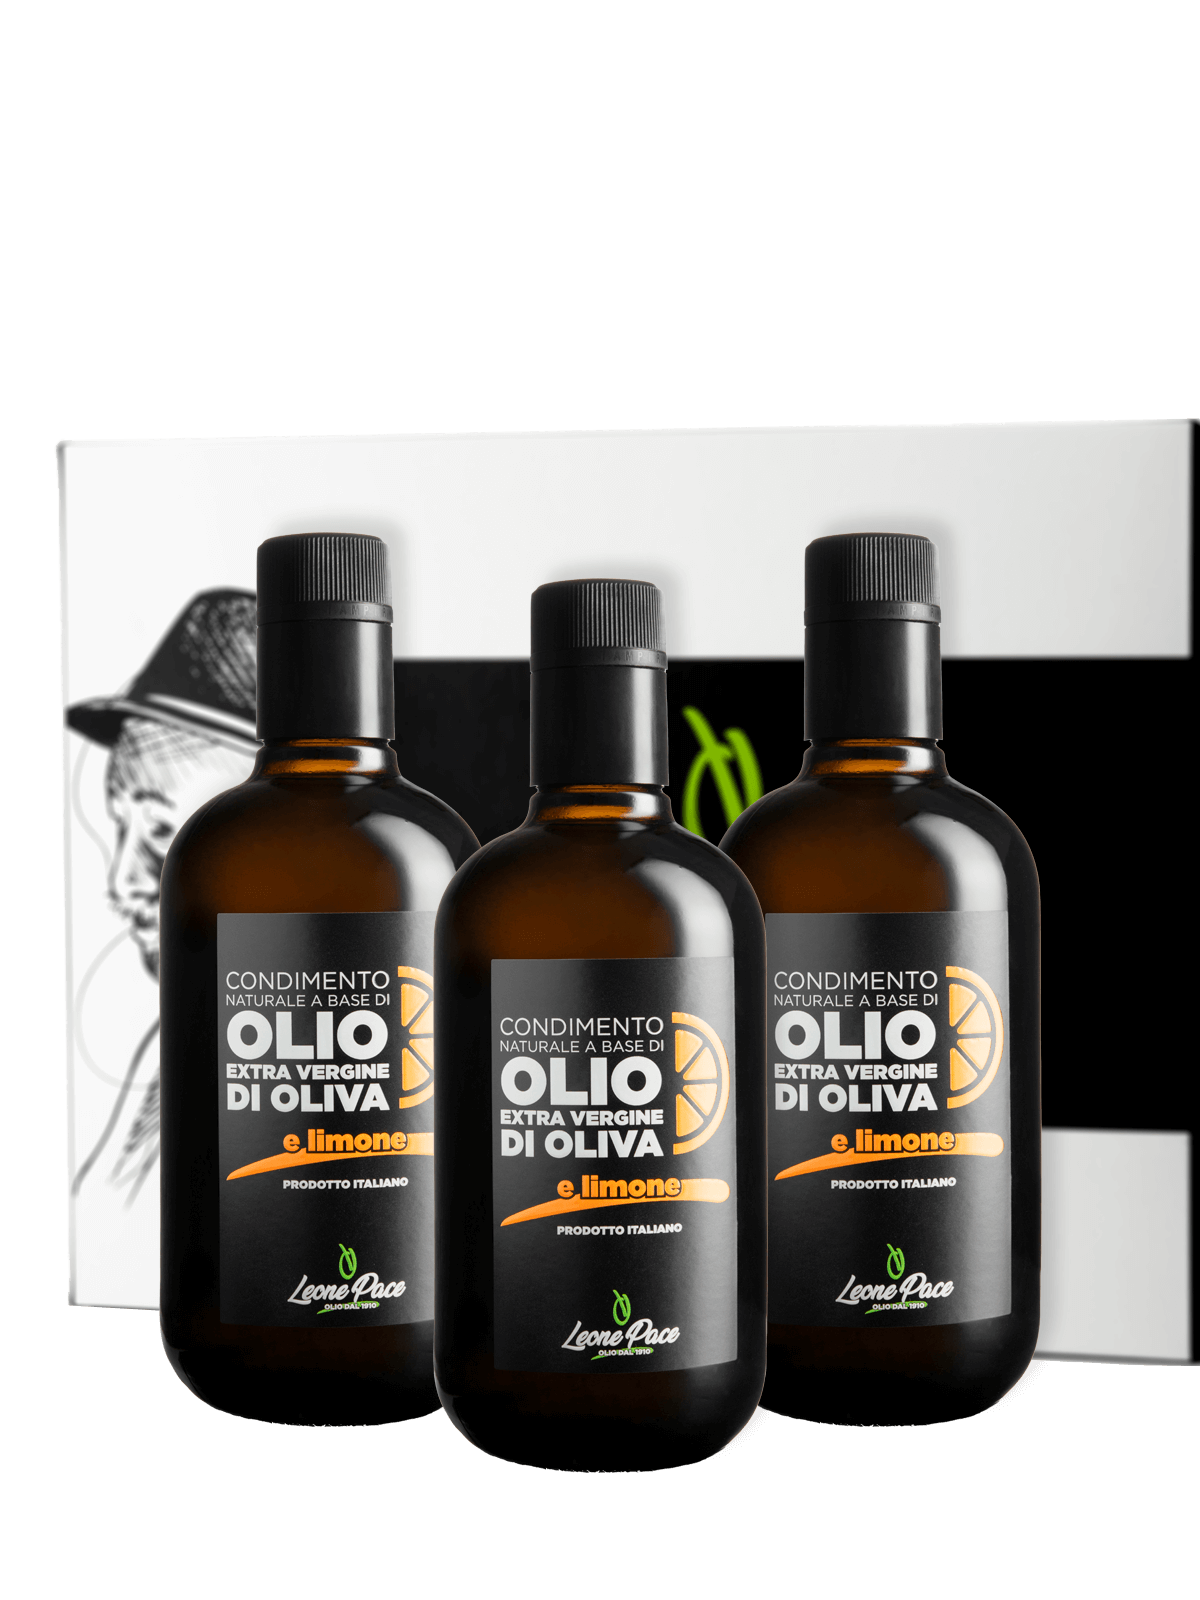 Condimento naturale a base di Olio EVO aromatizzato al limone - Prodotto a freddo - Box 3 x 0,5L